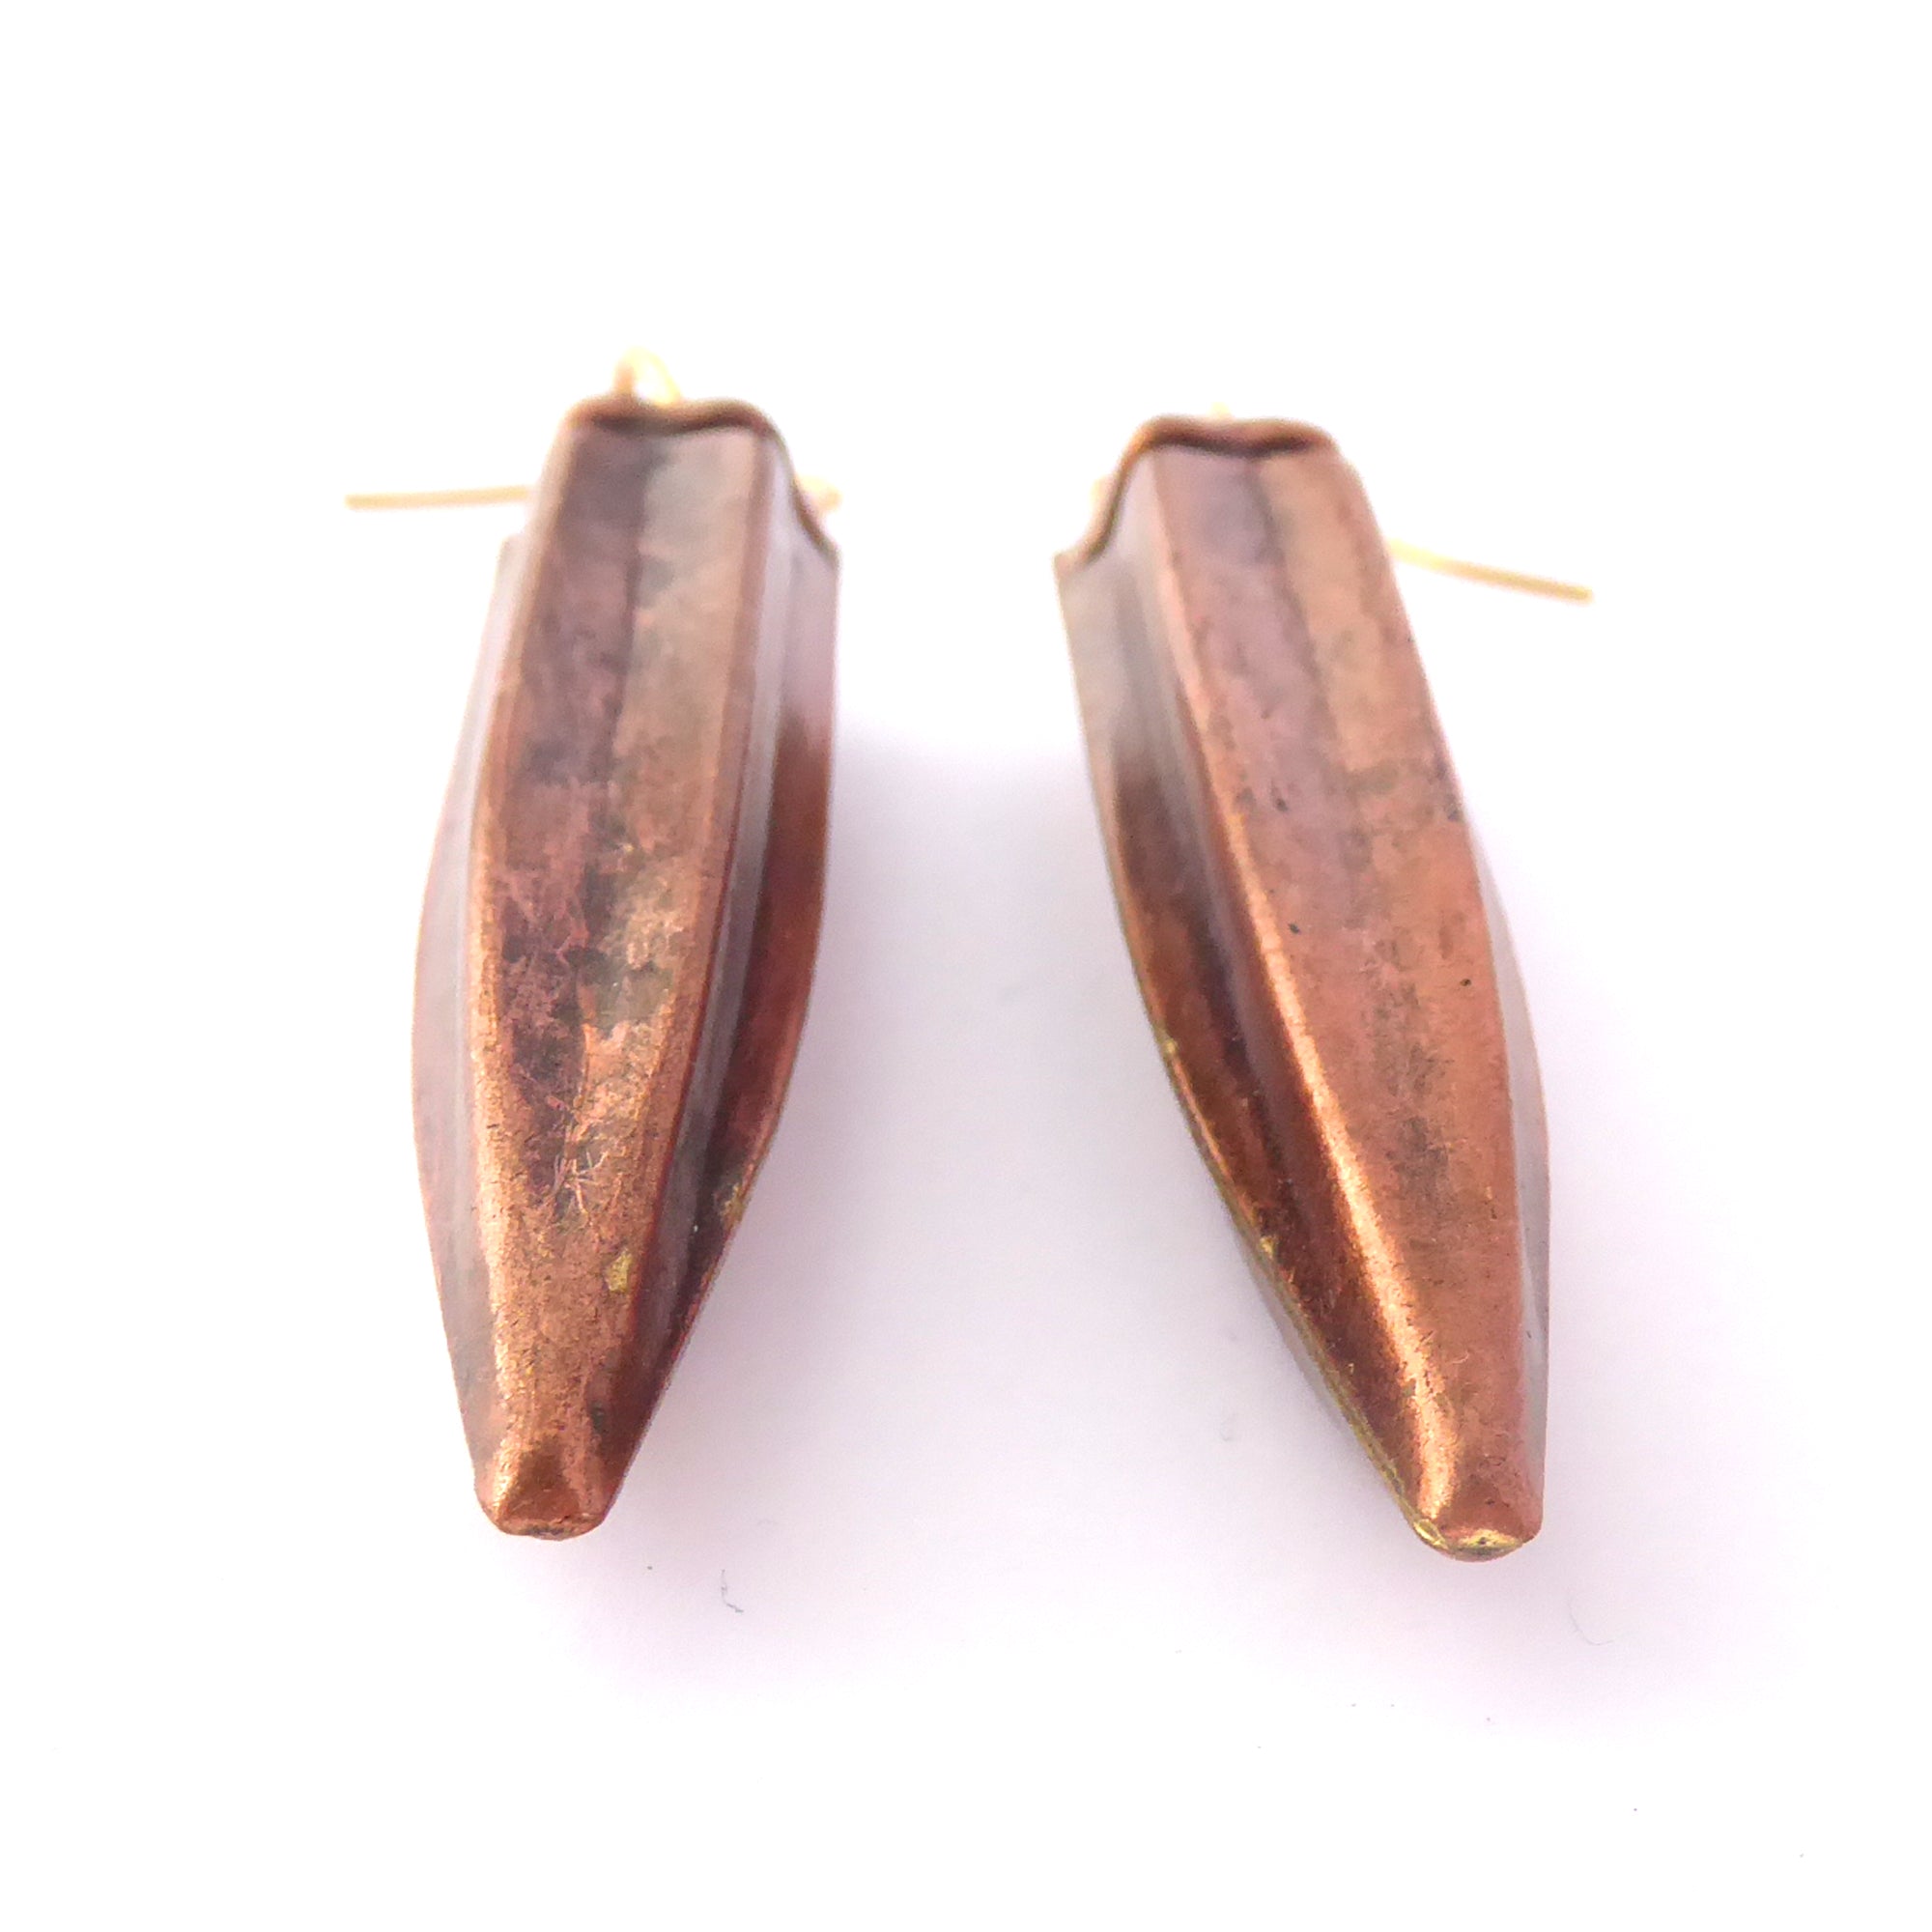 Copper okra earrings